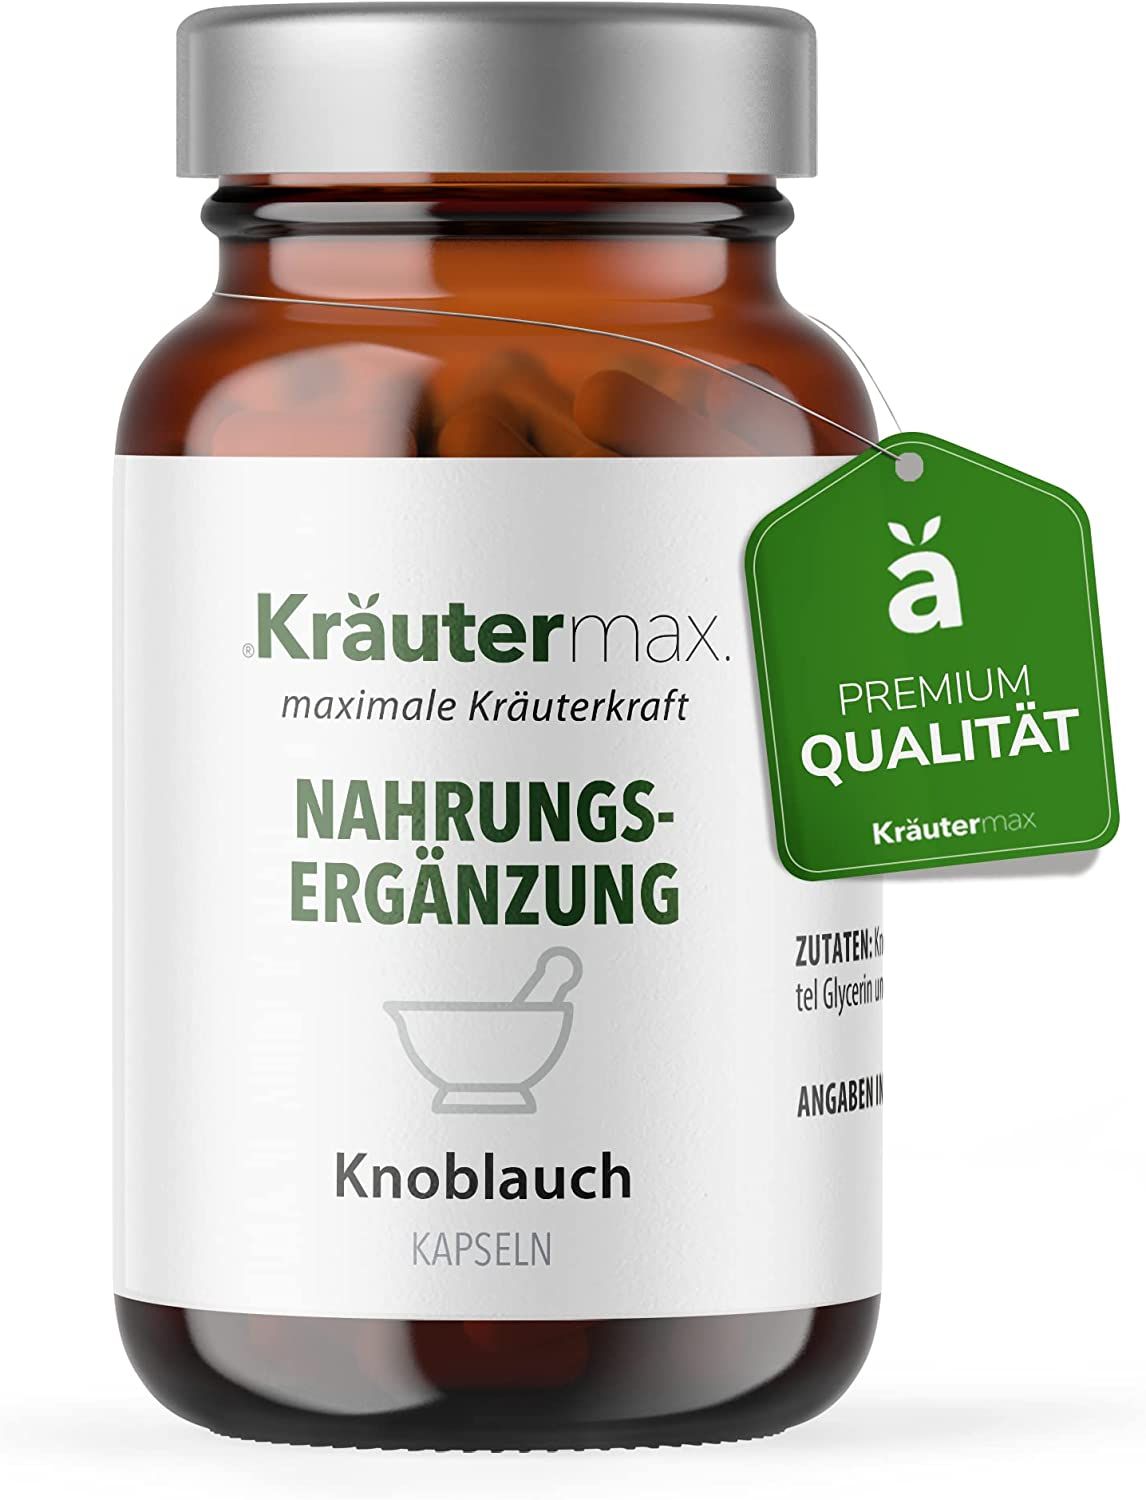 Kräutermax Knoblauch Kapseln mit 500 mg Knoblauch Öl Mazerat